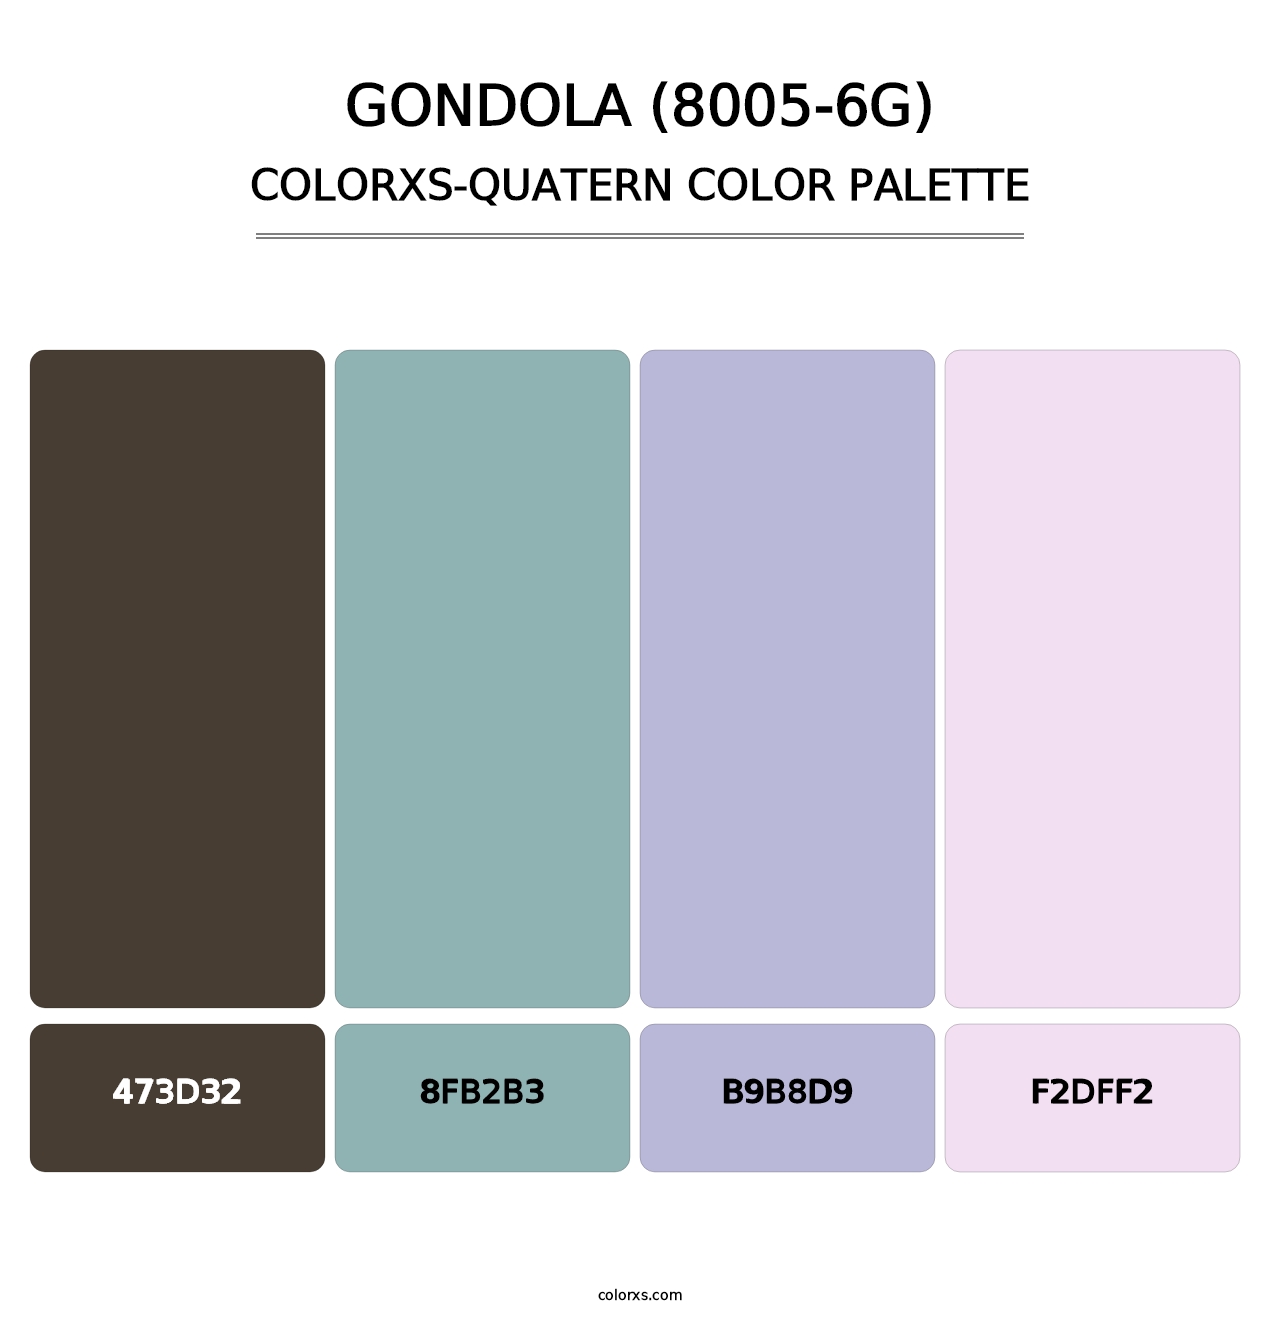 Gondola (8005-6G) - Colorxs Quatern Palette